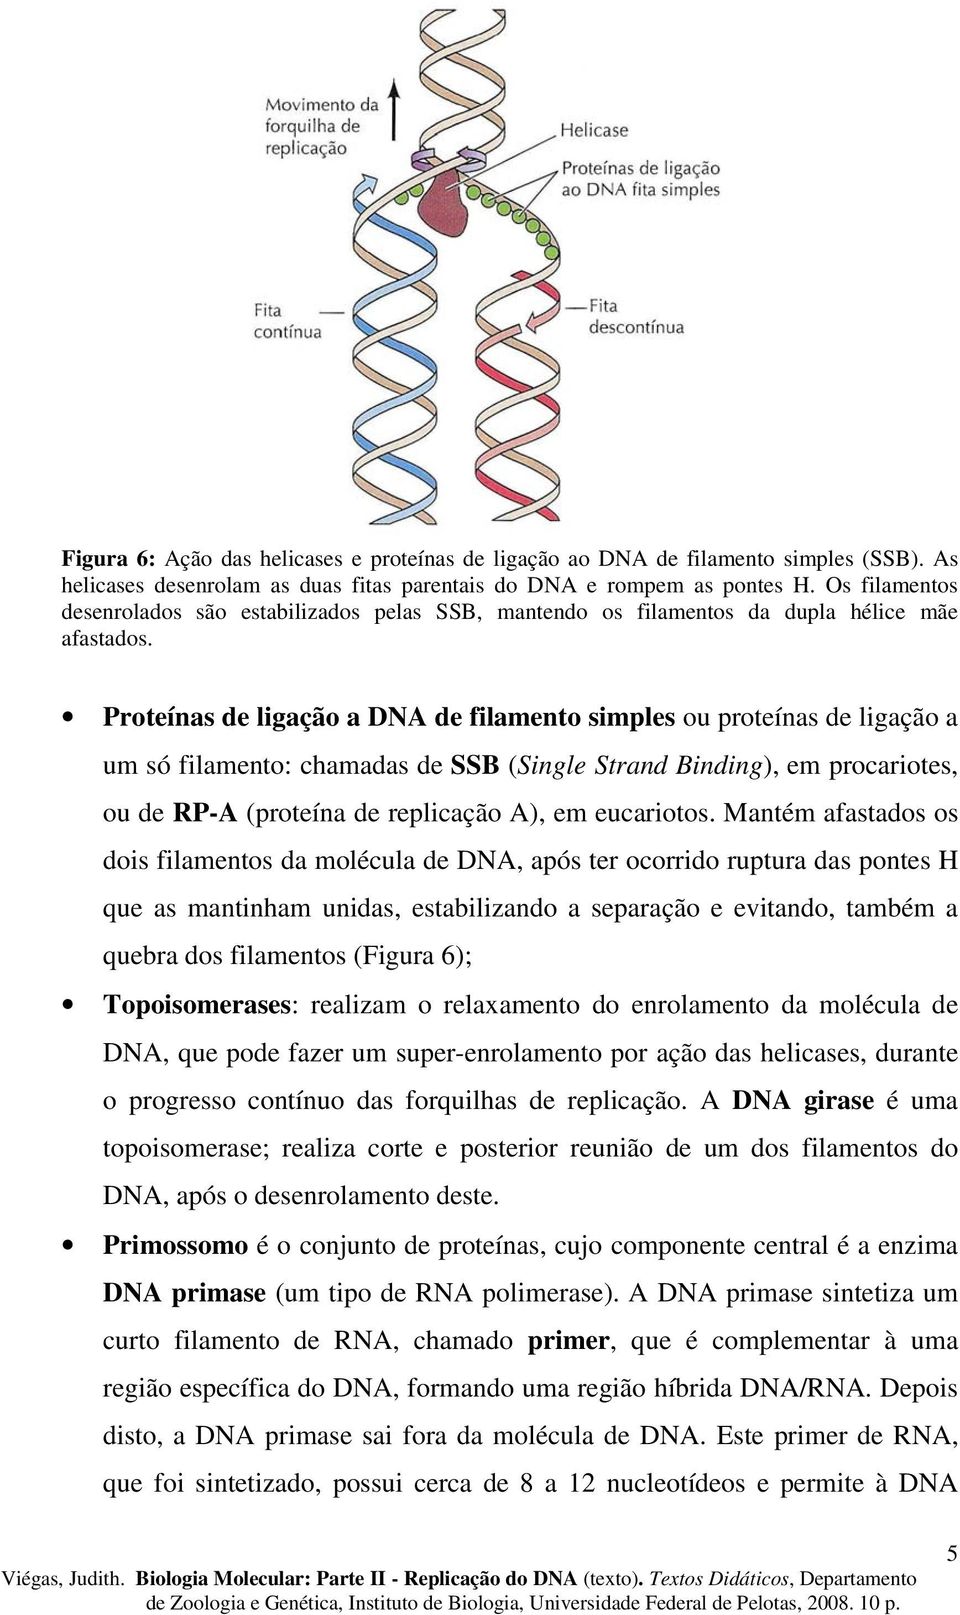 Proteínas de ligação a DNA de filamento simples ou proteínas de ligação a um só filamento: chamadas de SSB (Single Strand Binding), em procariotes, ou de RP-A (proteína de replicação A), em